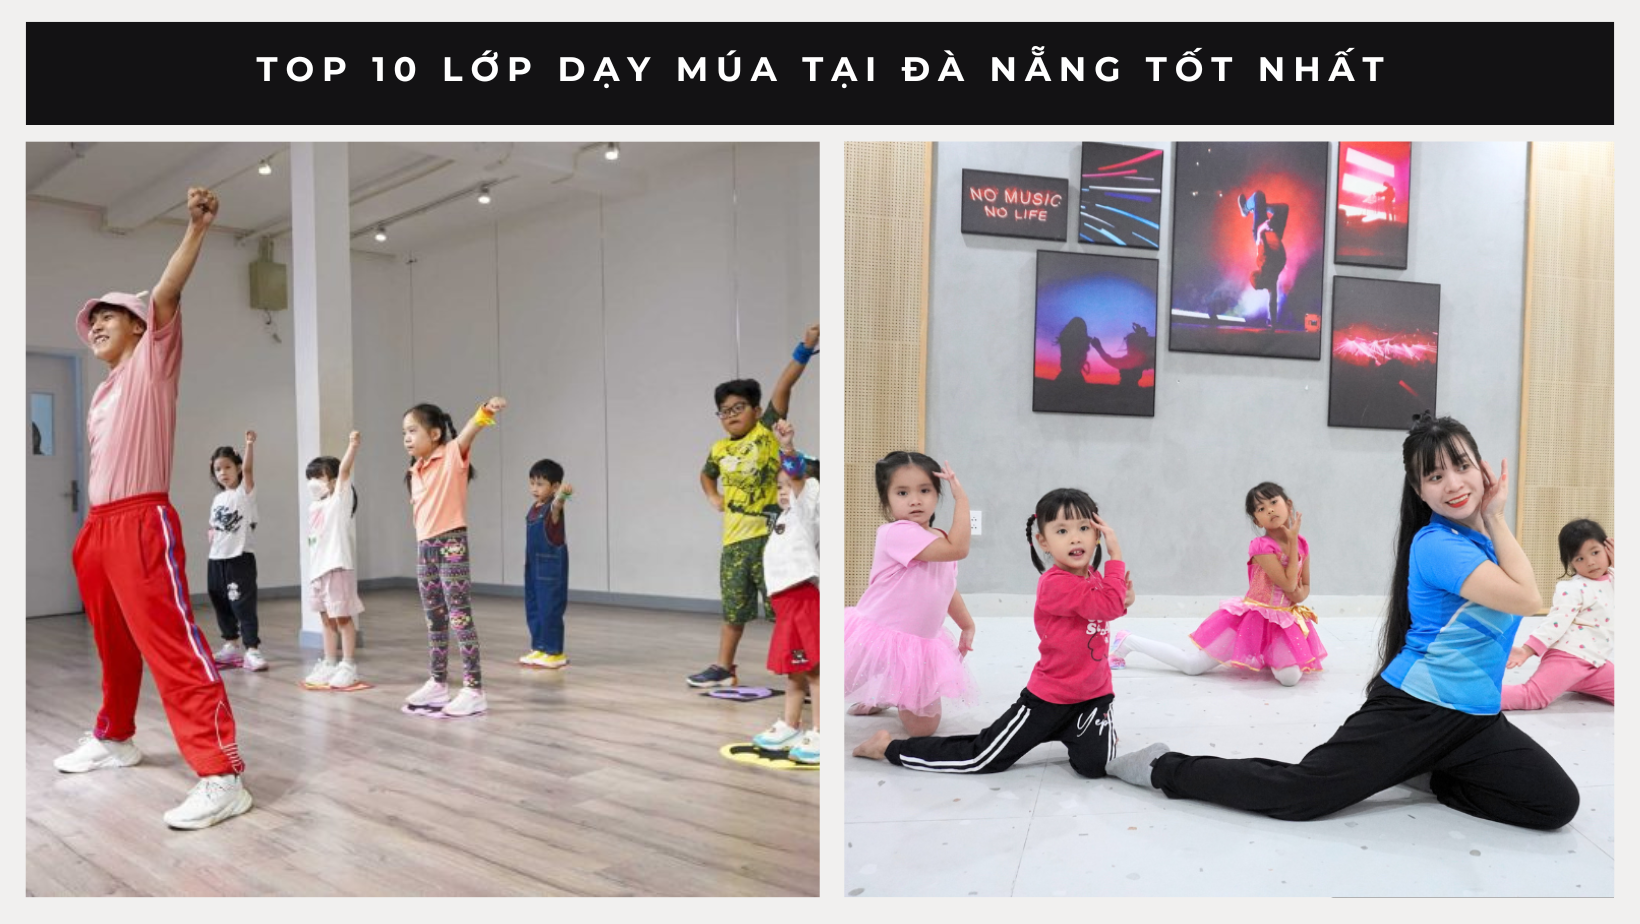 Top 10 Studio chụp ảnh cho bé ở Đà Nẵng